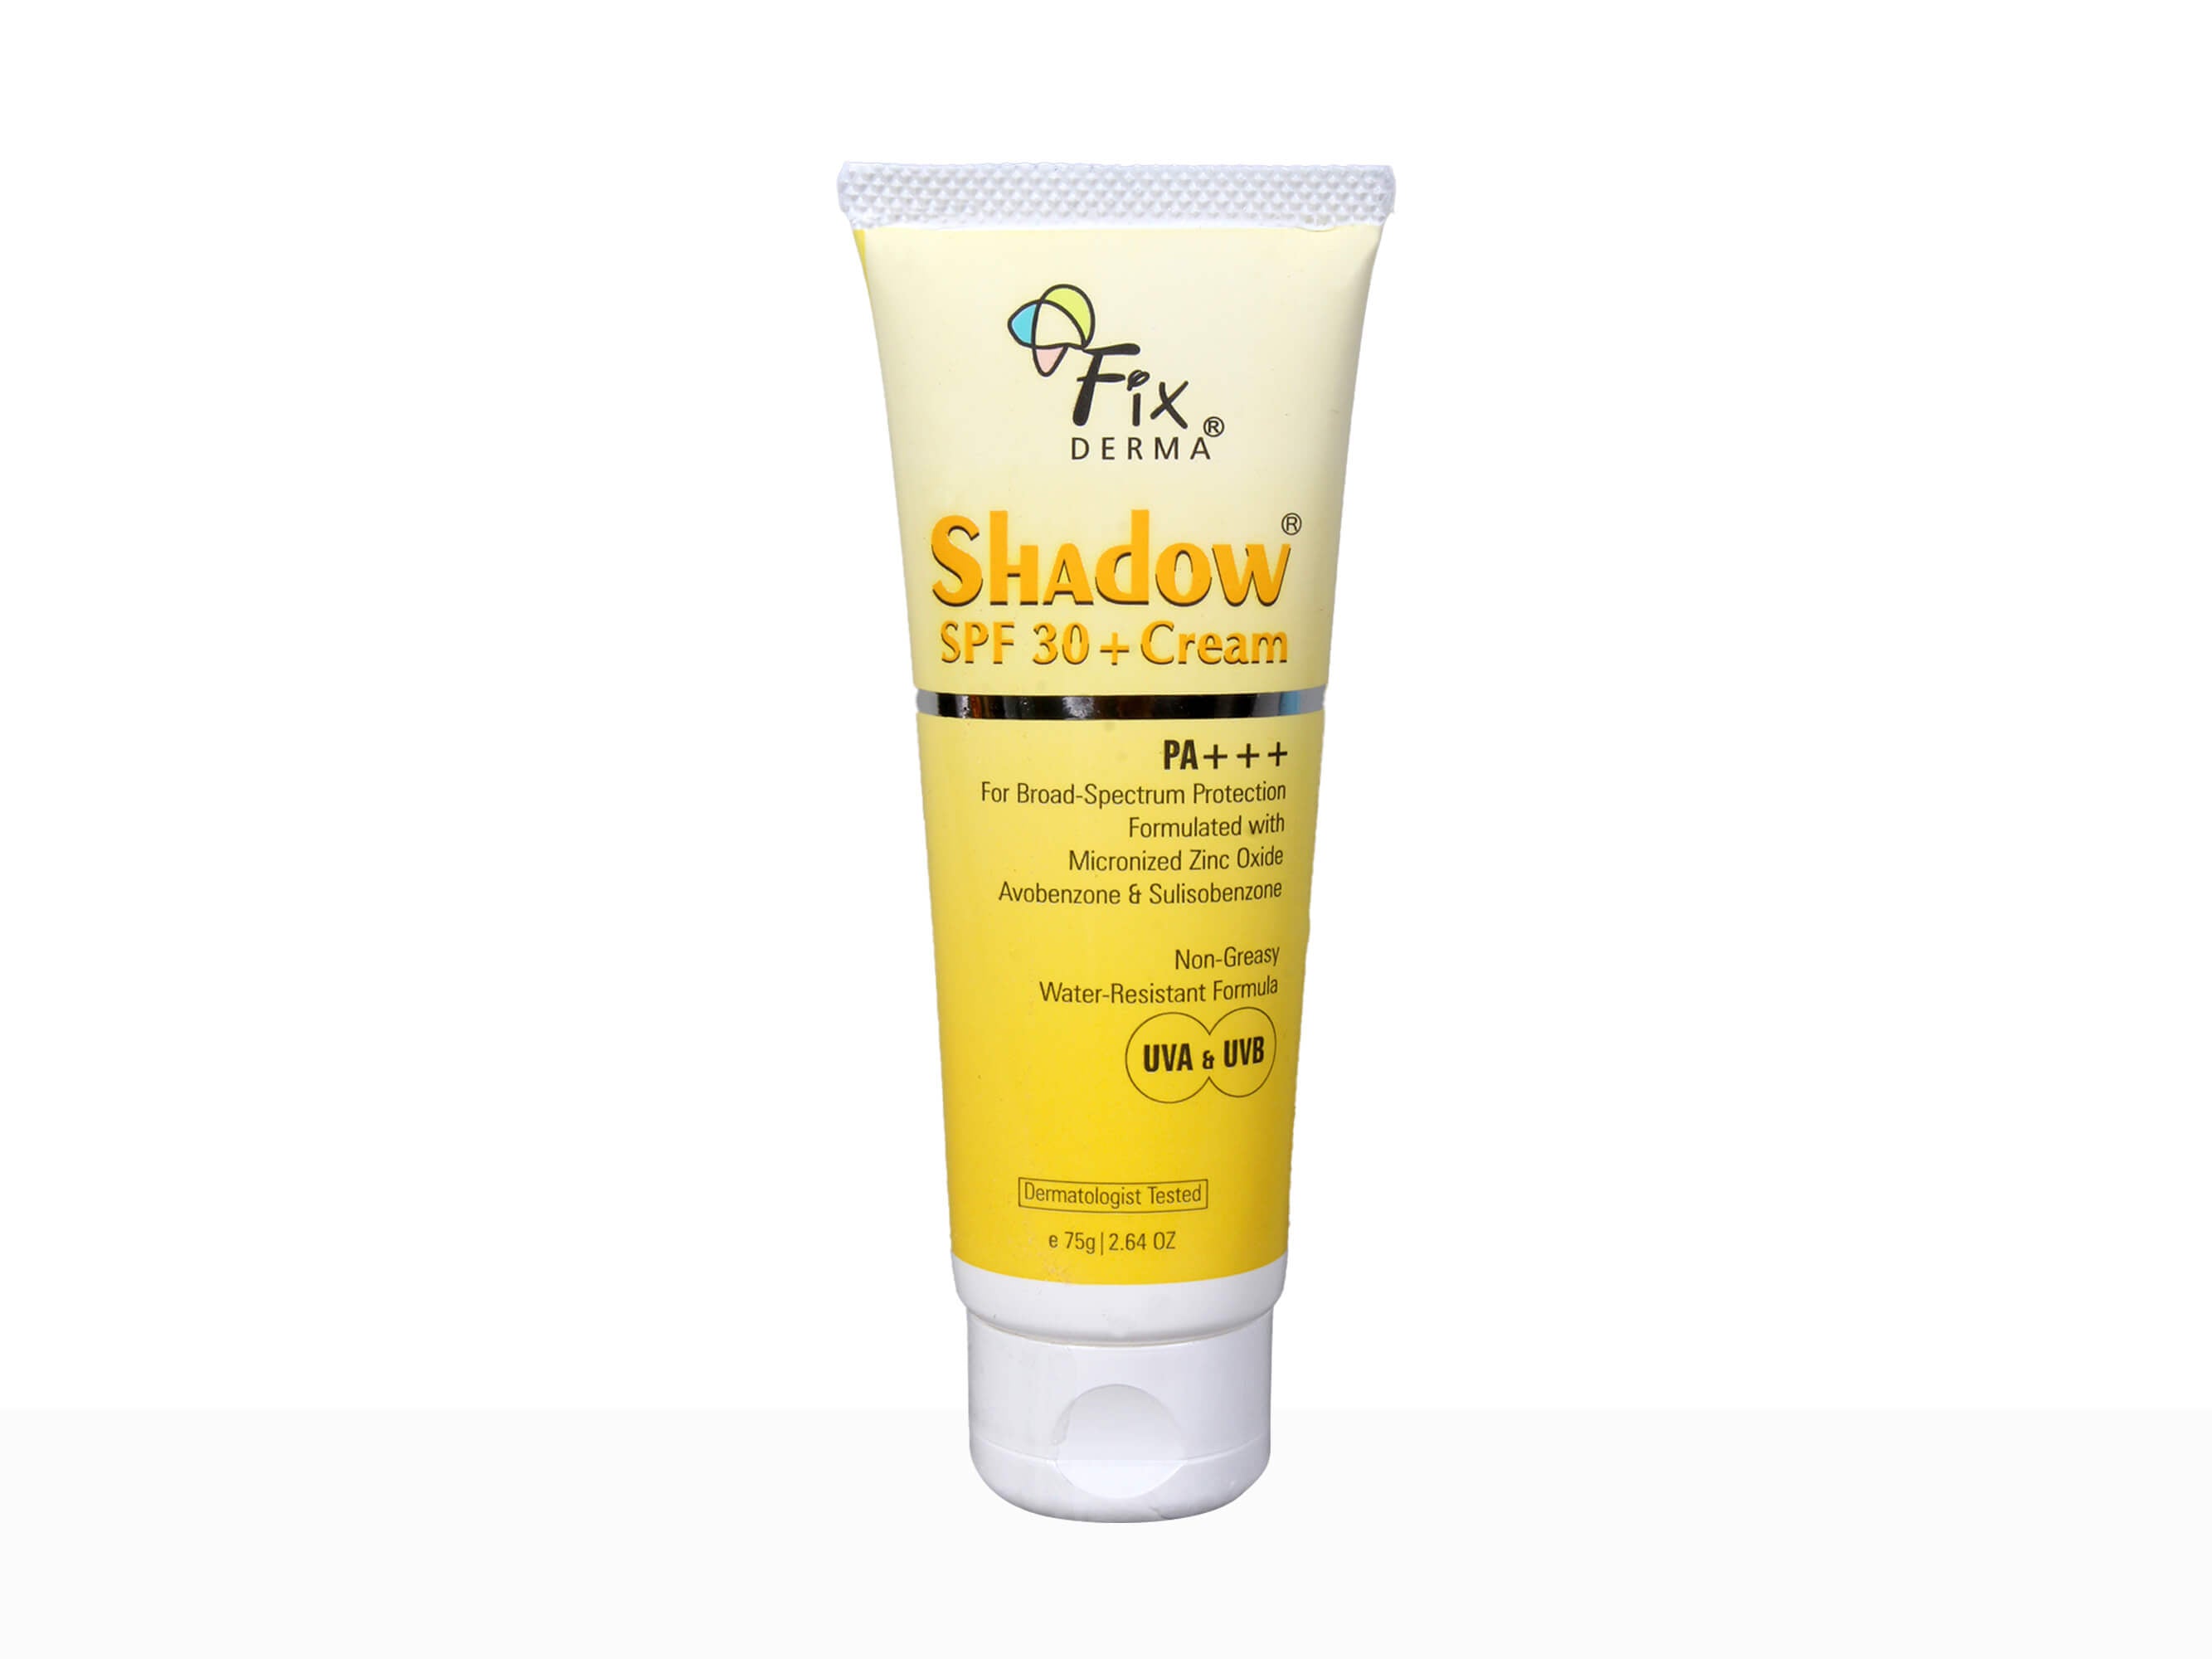 Fixderma Shadow SPF 30+ PA+++ Cream - Clinikally